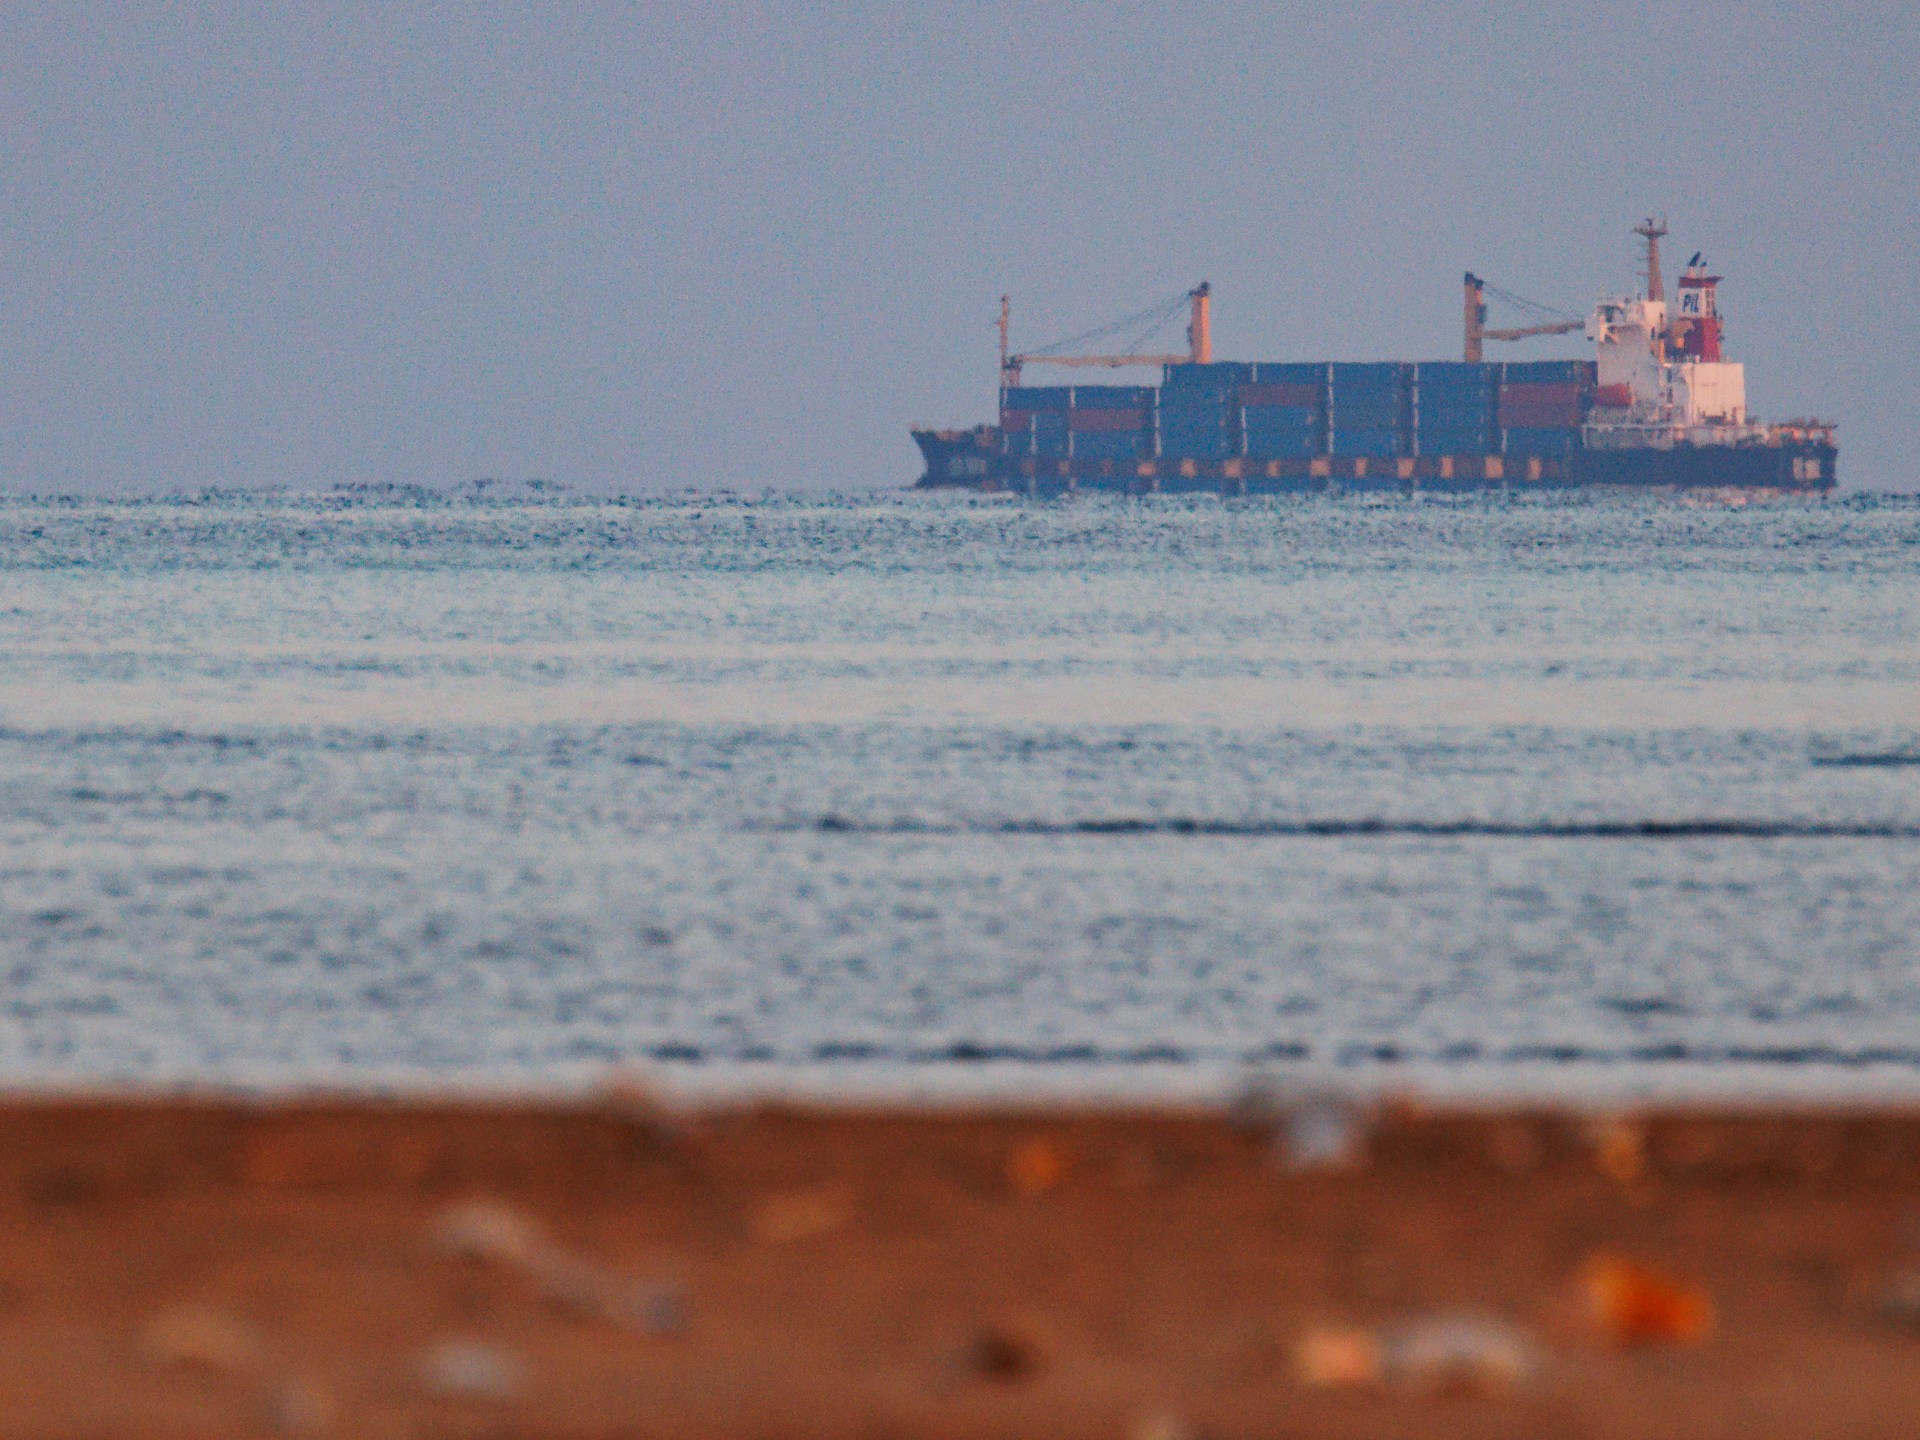 إصابة سفينة شحن بقصف صاروخي قبالة اليمن | أخبار – البوكس نيوز